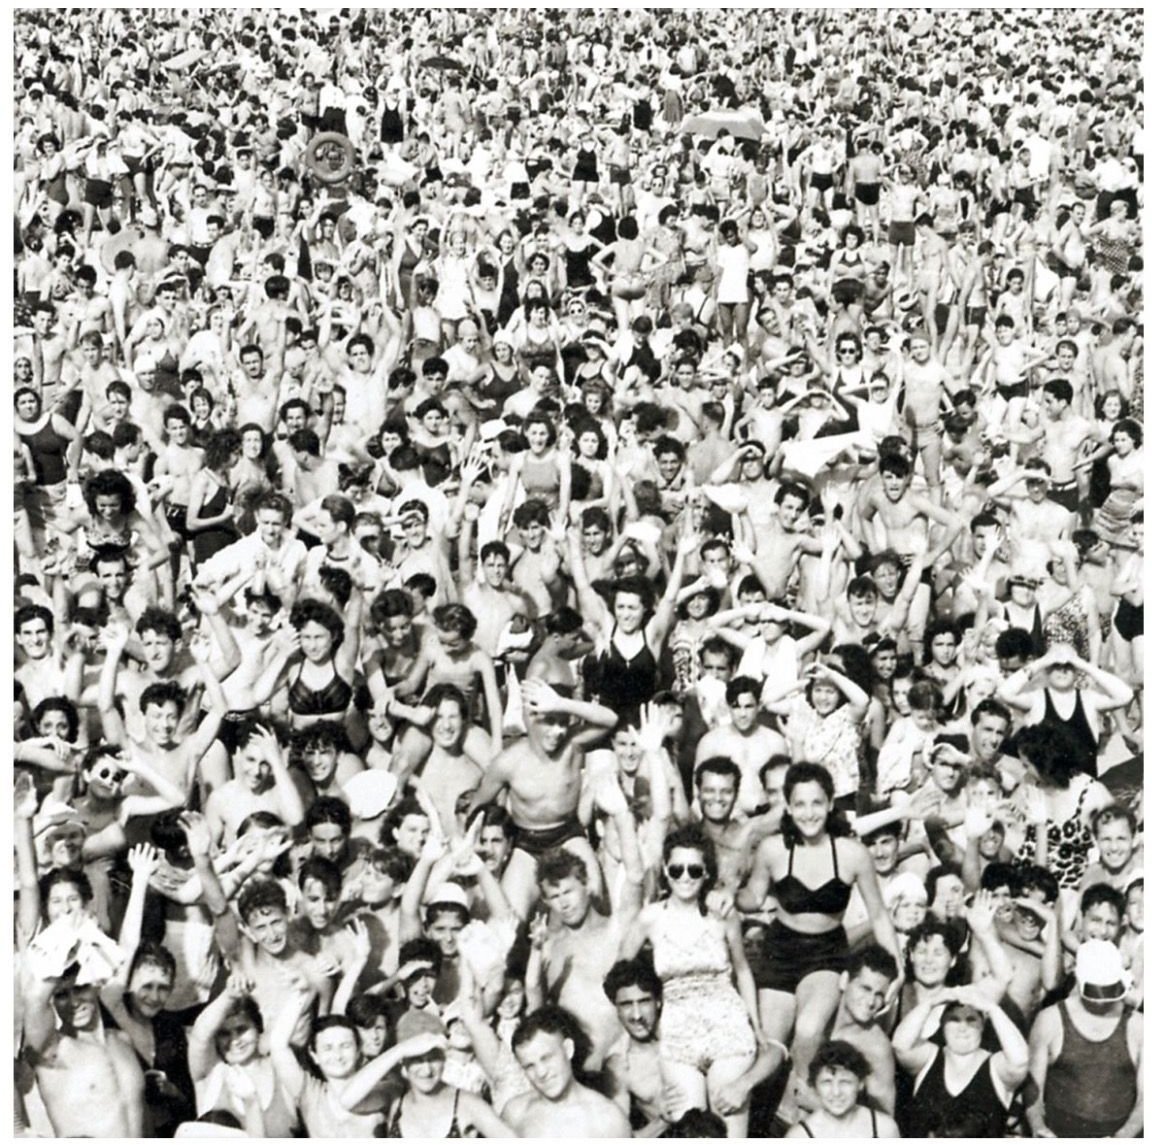 LP platňa George Michael - Listen Without Prejudice (Reissue) (LP)